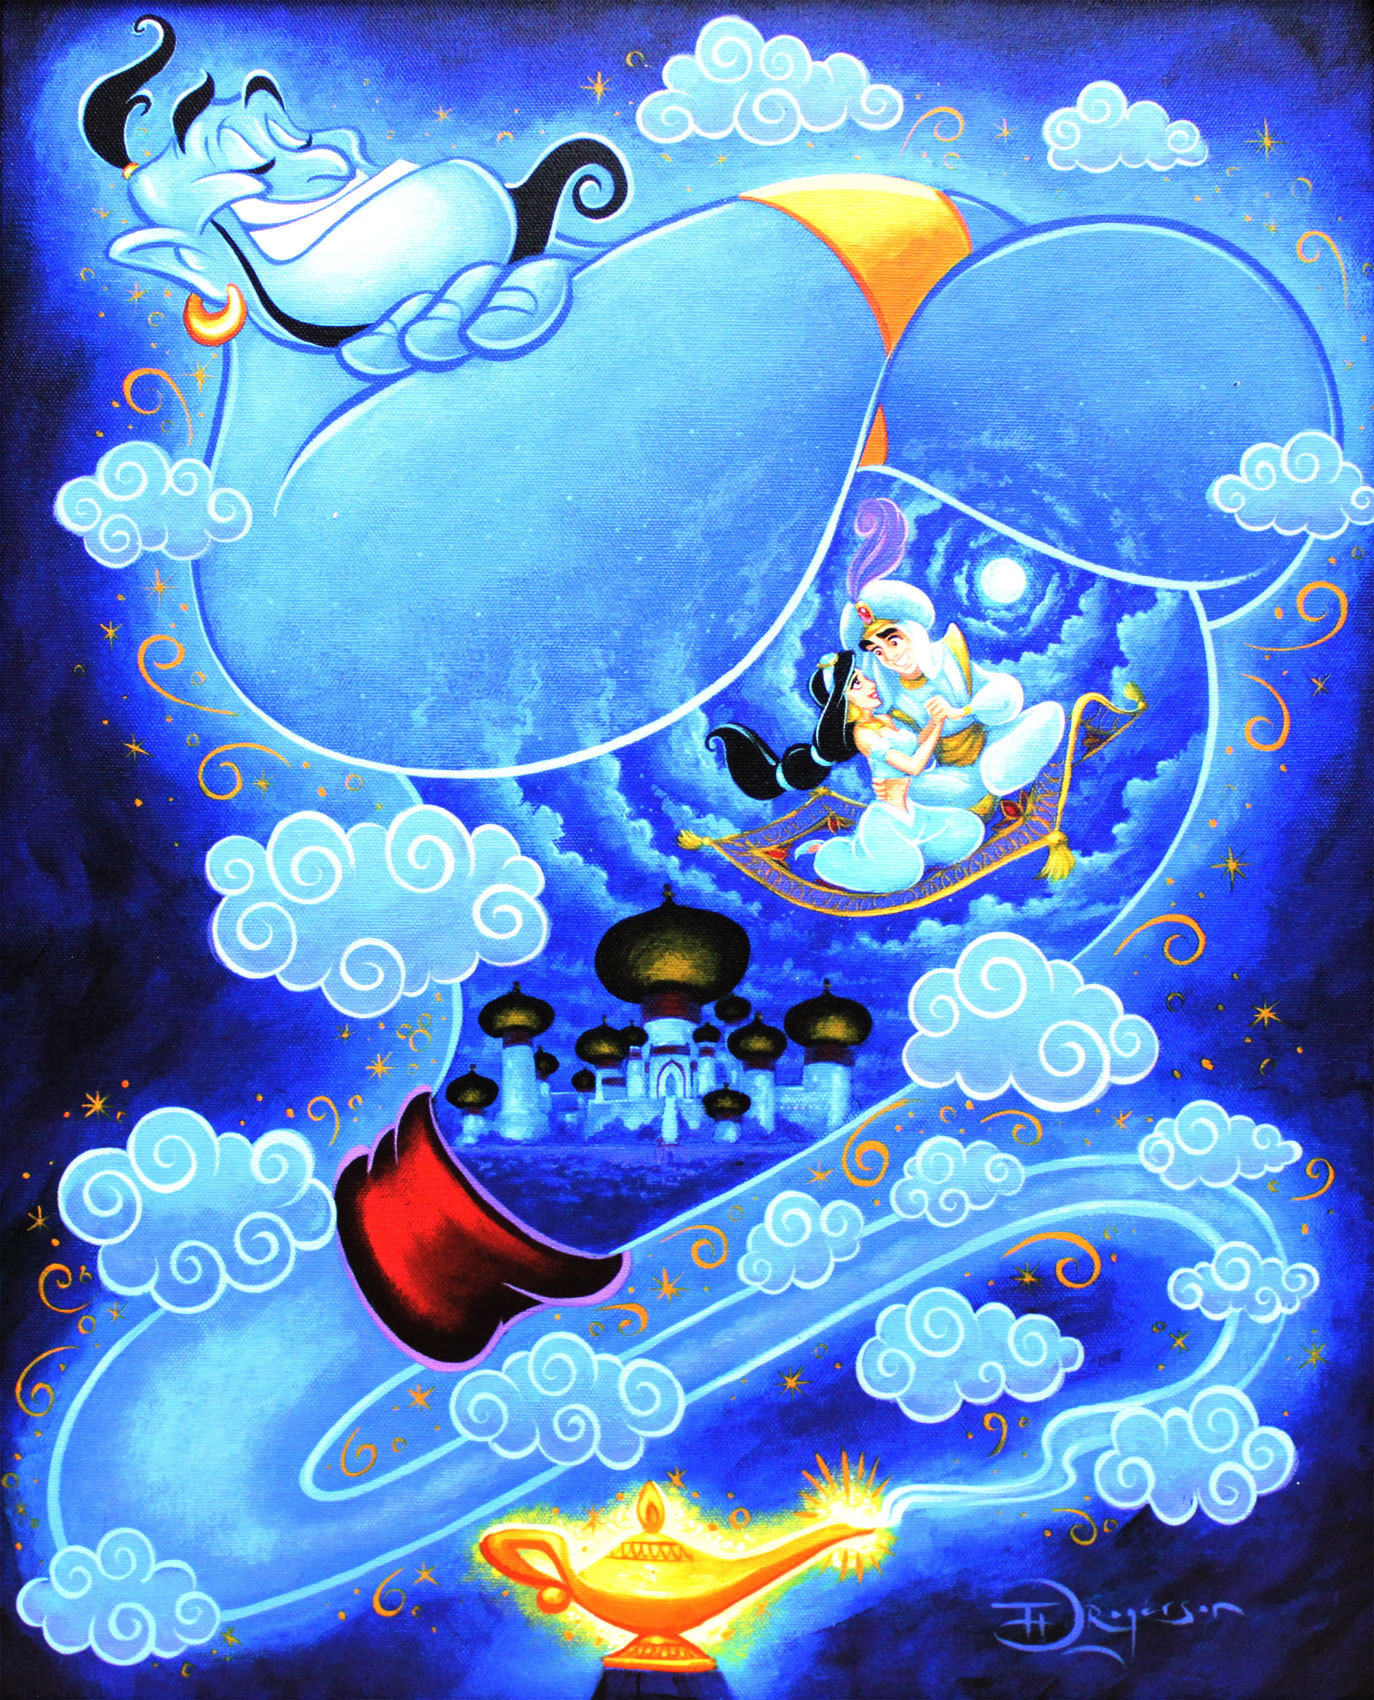 ディズニー アラジン I Dream Of Genie 作品証明書 展示用フック付 限定500部キャンバスジークレ ディズニー絵画 ポスター